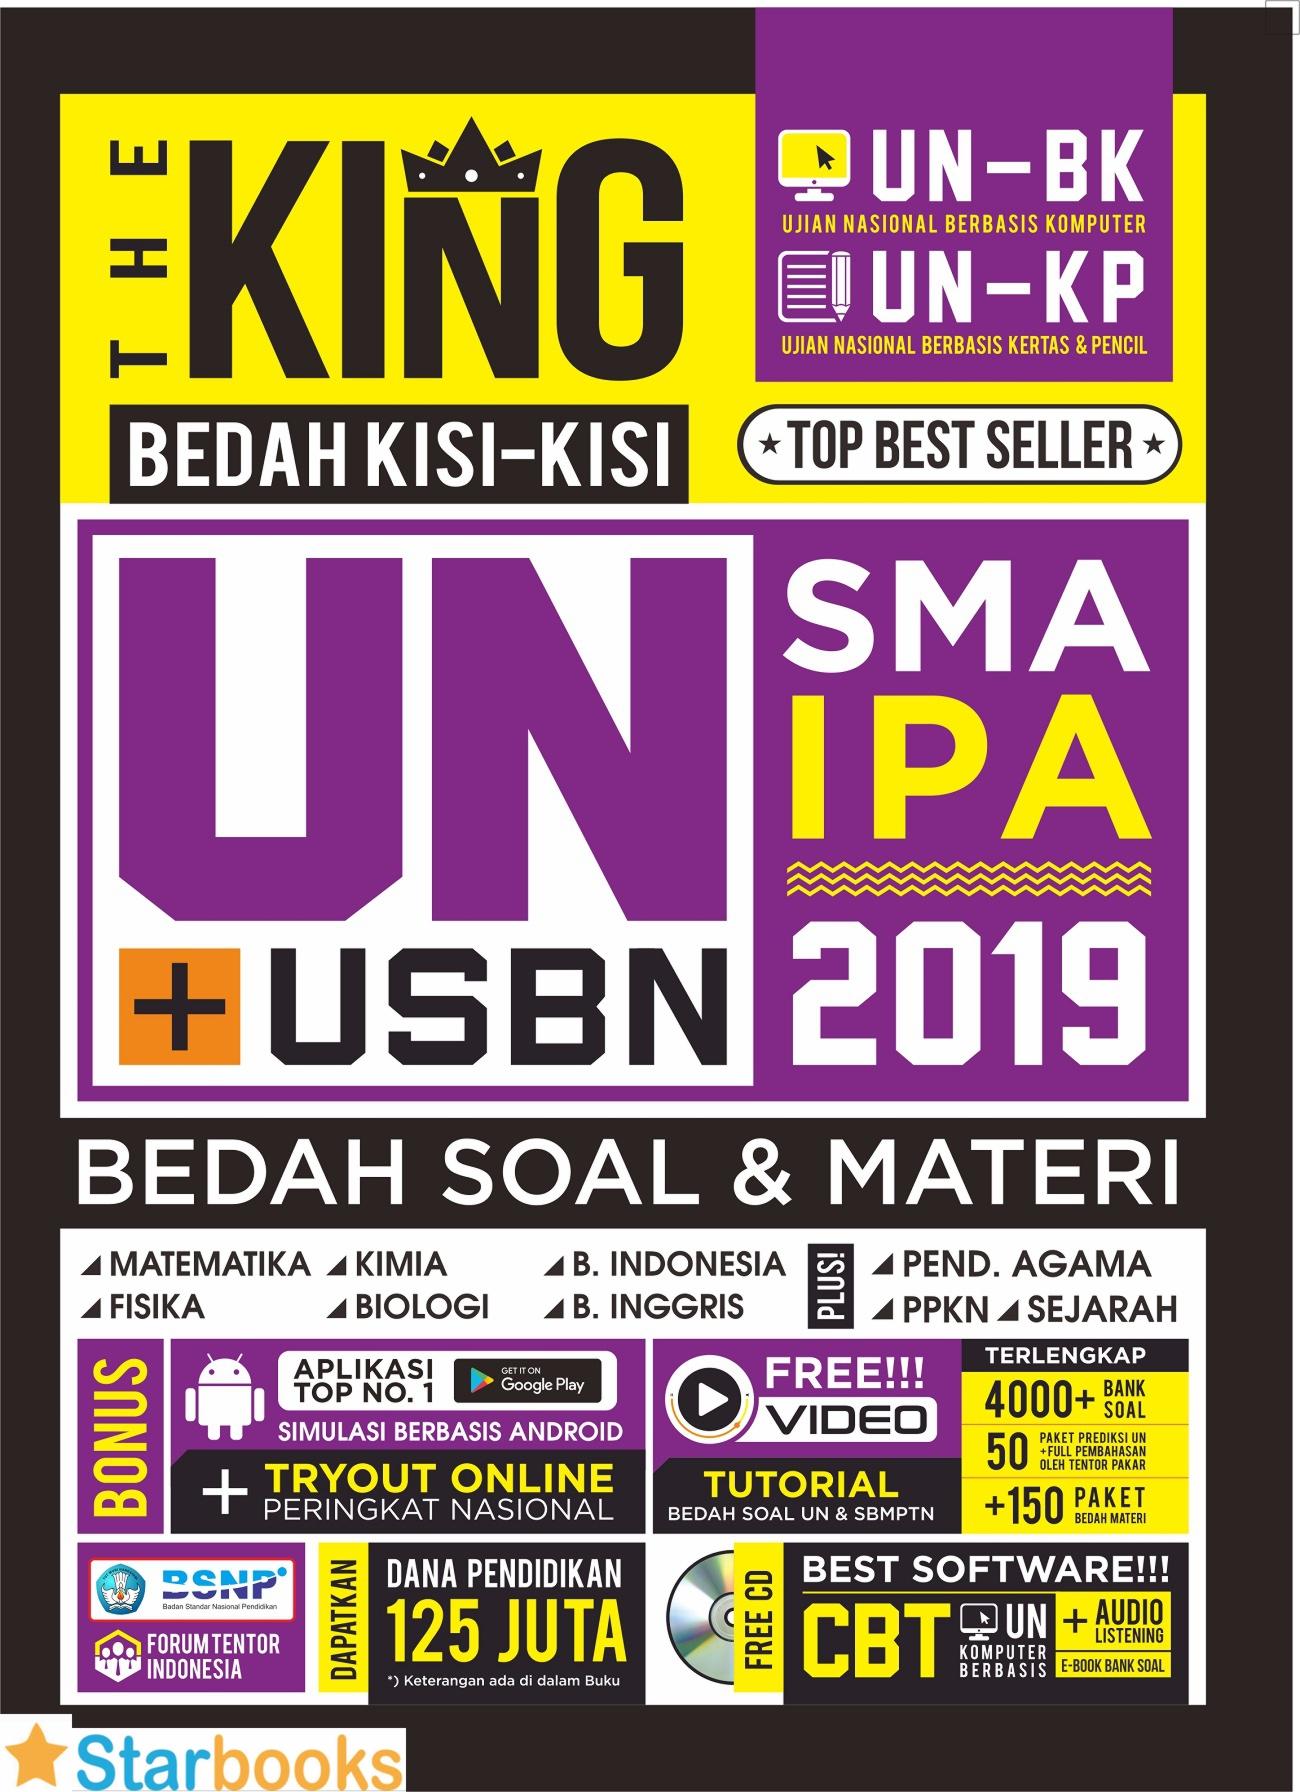 8424 barang ditemukan dalam Buku Pelajaran THE KING BEDAH KISI2 UN SMA IPA 2019 & CD